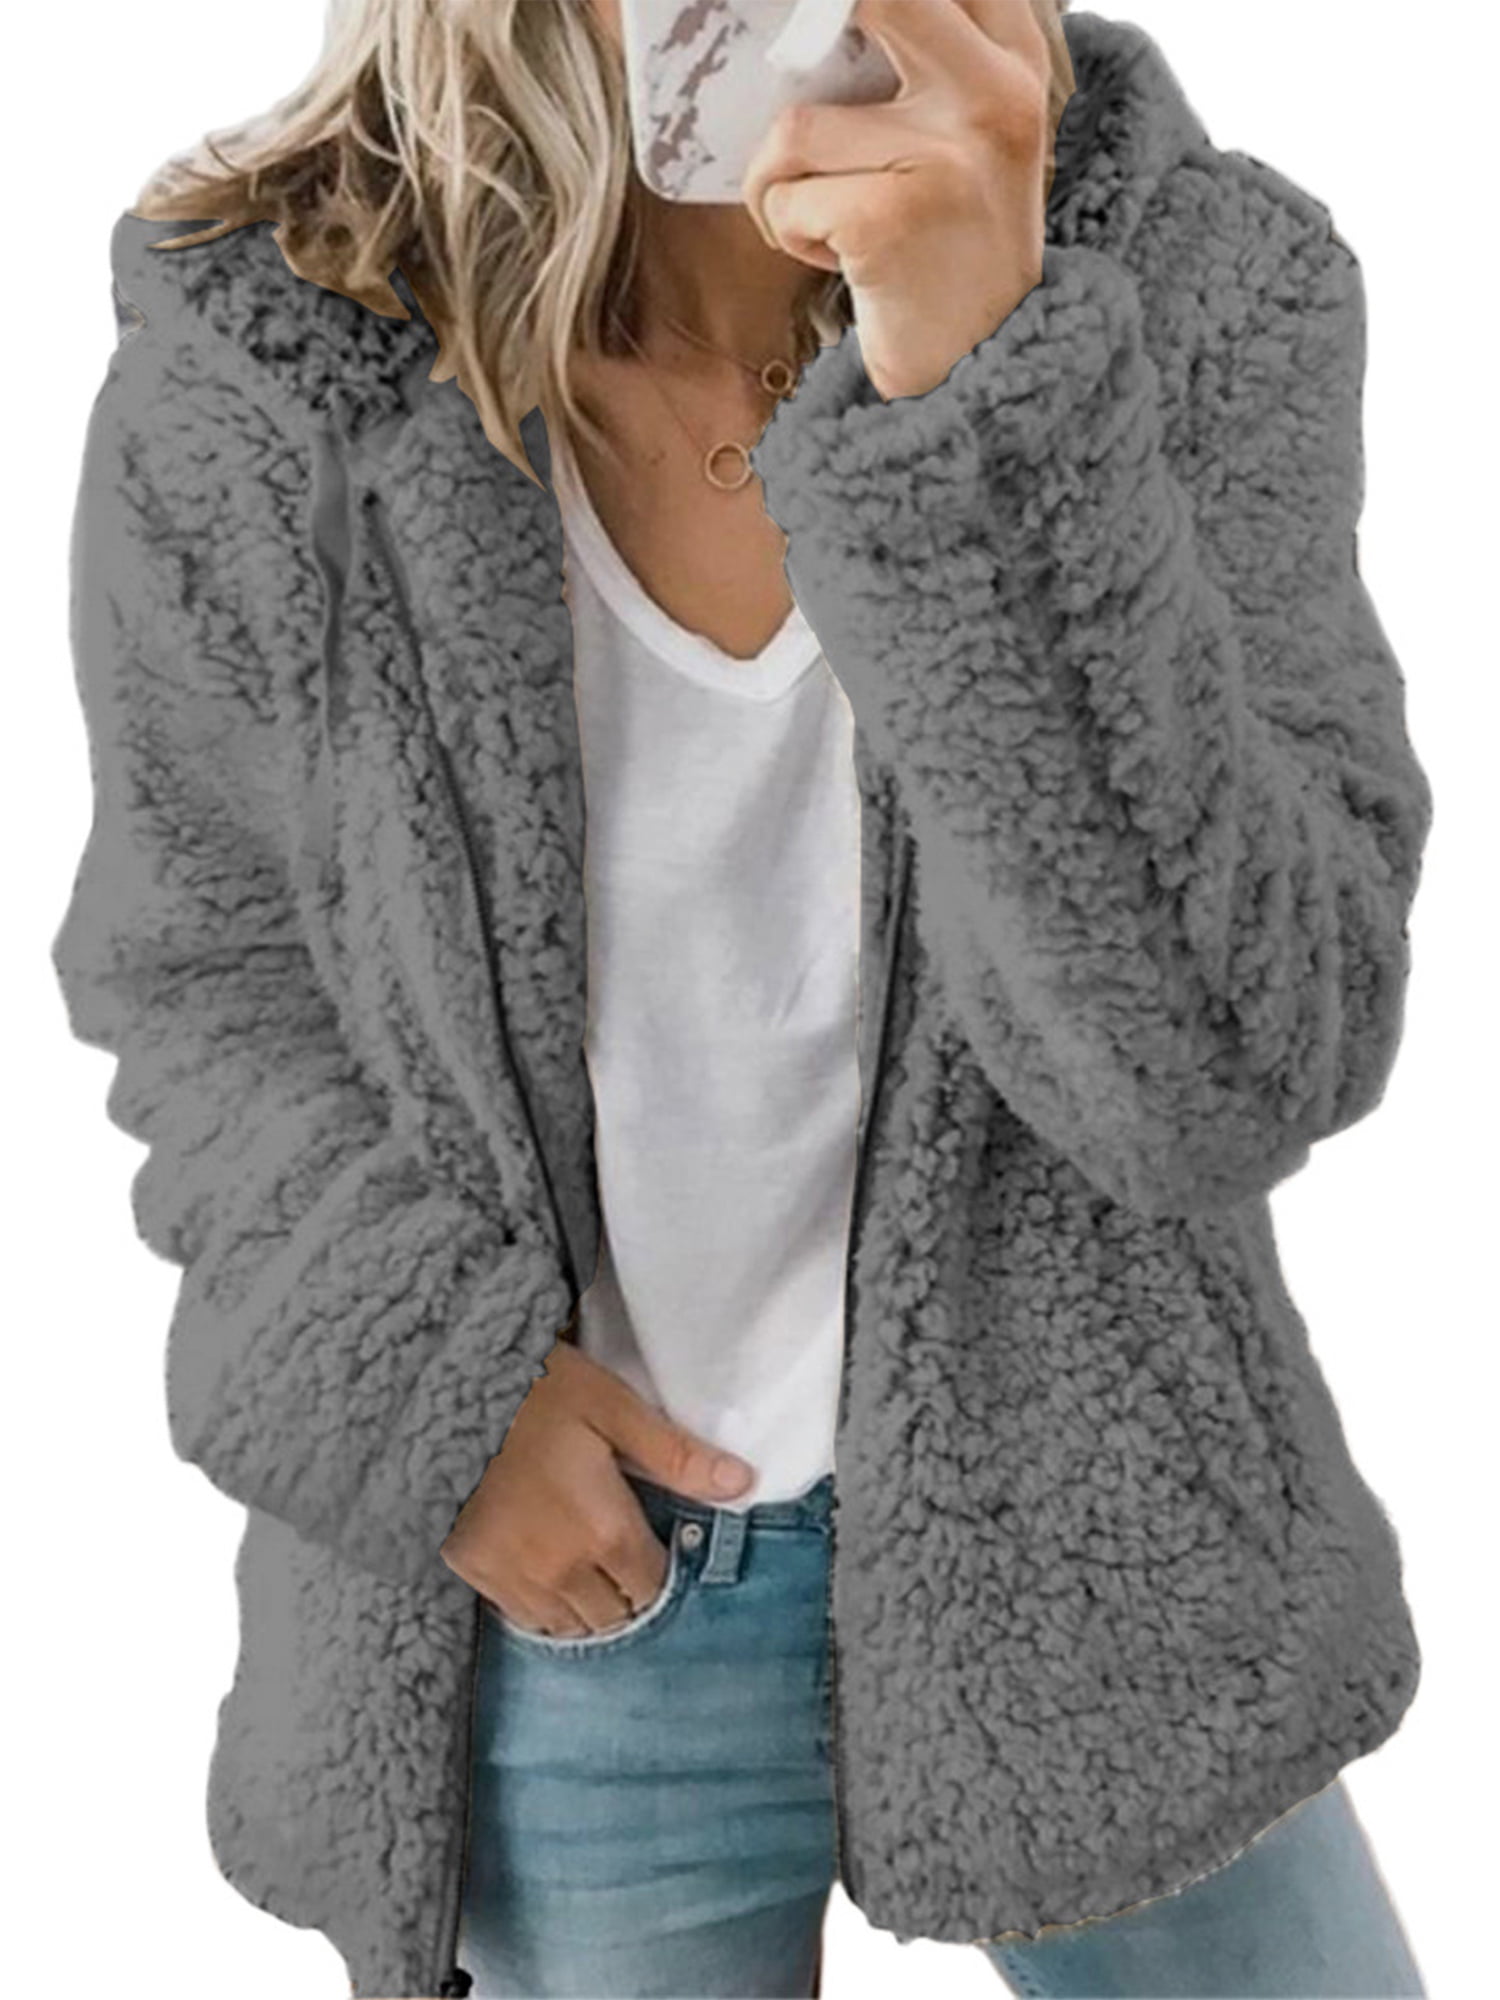 FAPIZI Womens Casual Long Sleeve Zip Fluffy Sherpa Sweatshirt Winter Warm Fuzzy Fleece Oversized Coat Jacket Pullover 